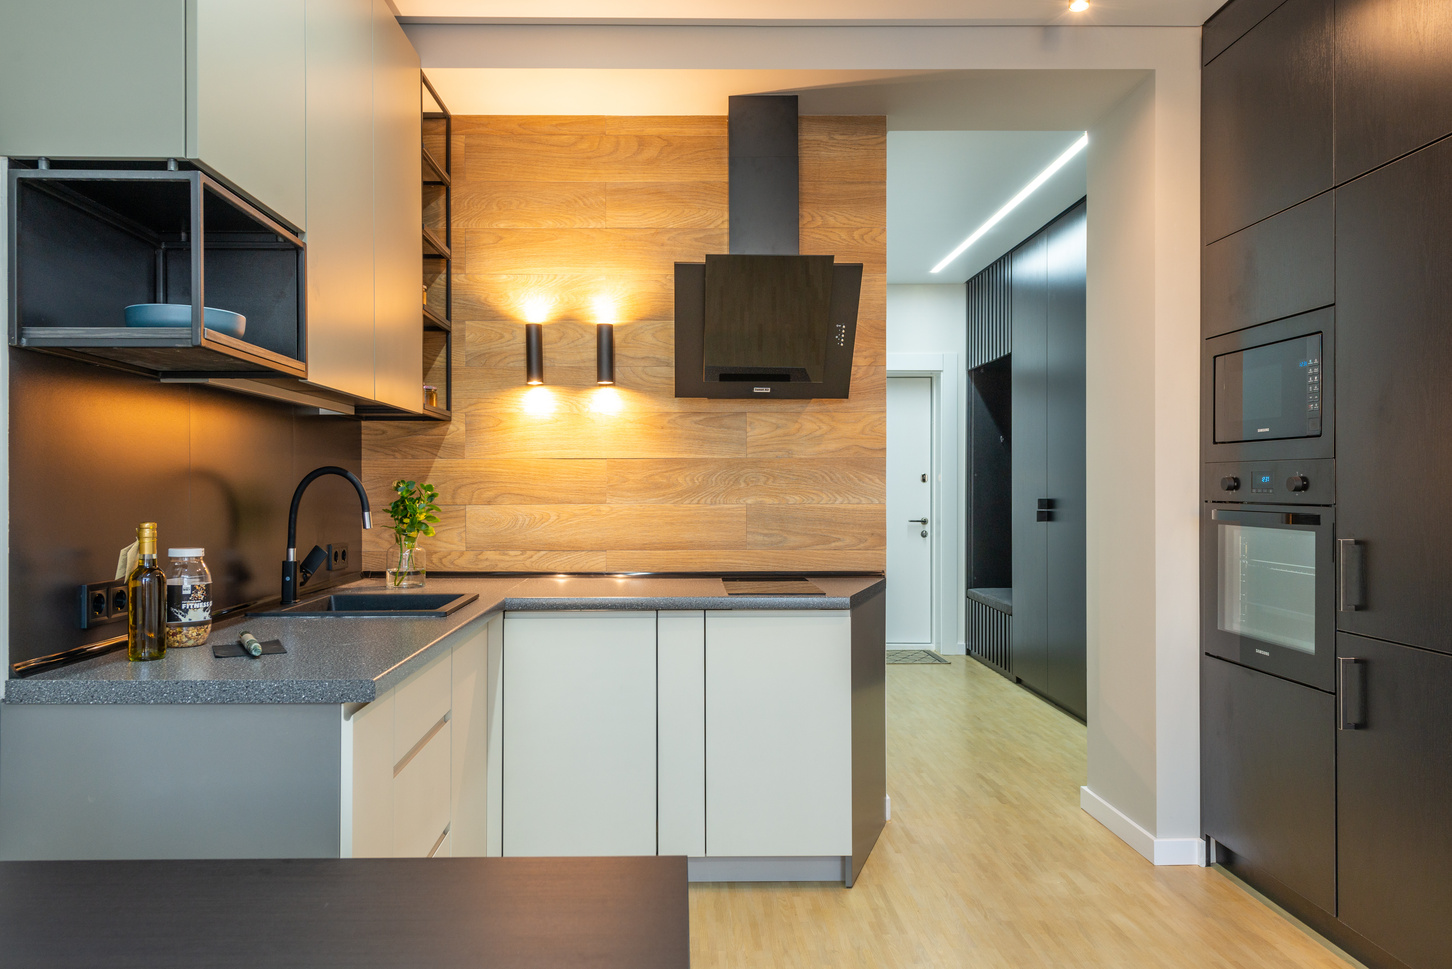 Modern kitchen design with built in appliance